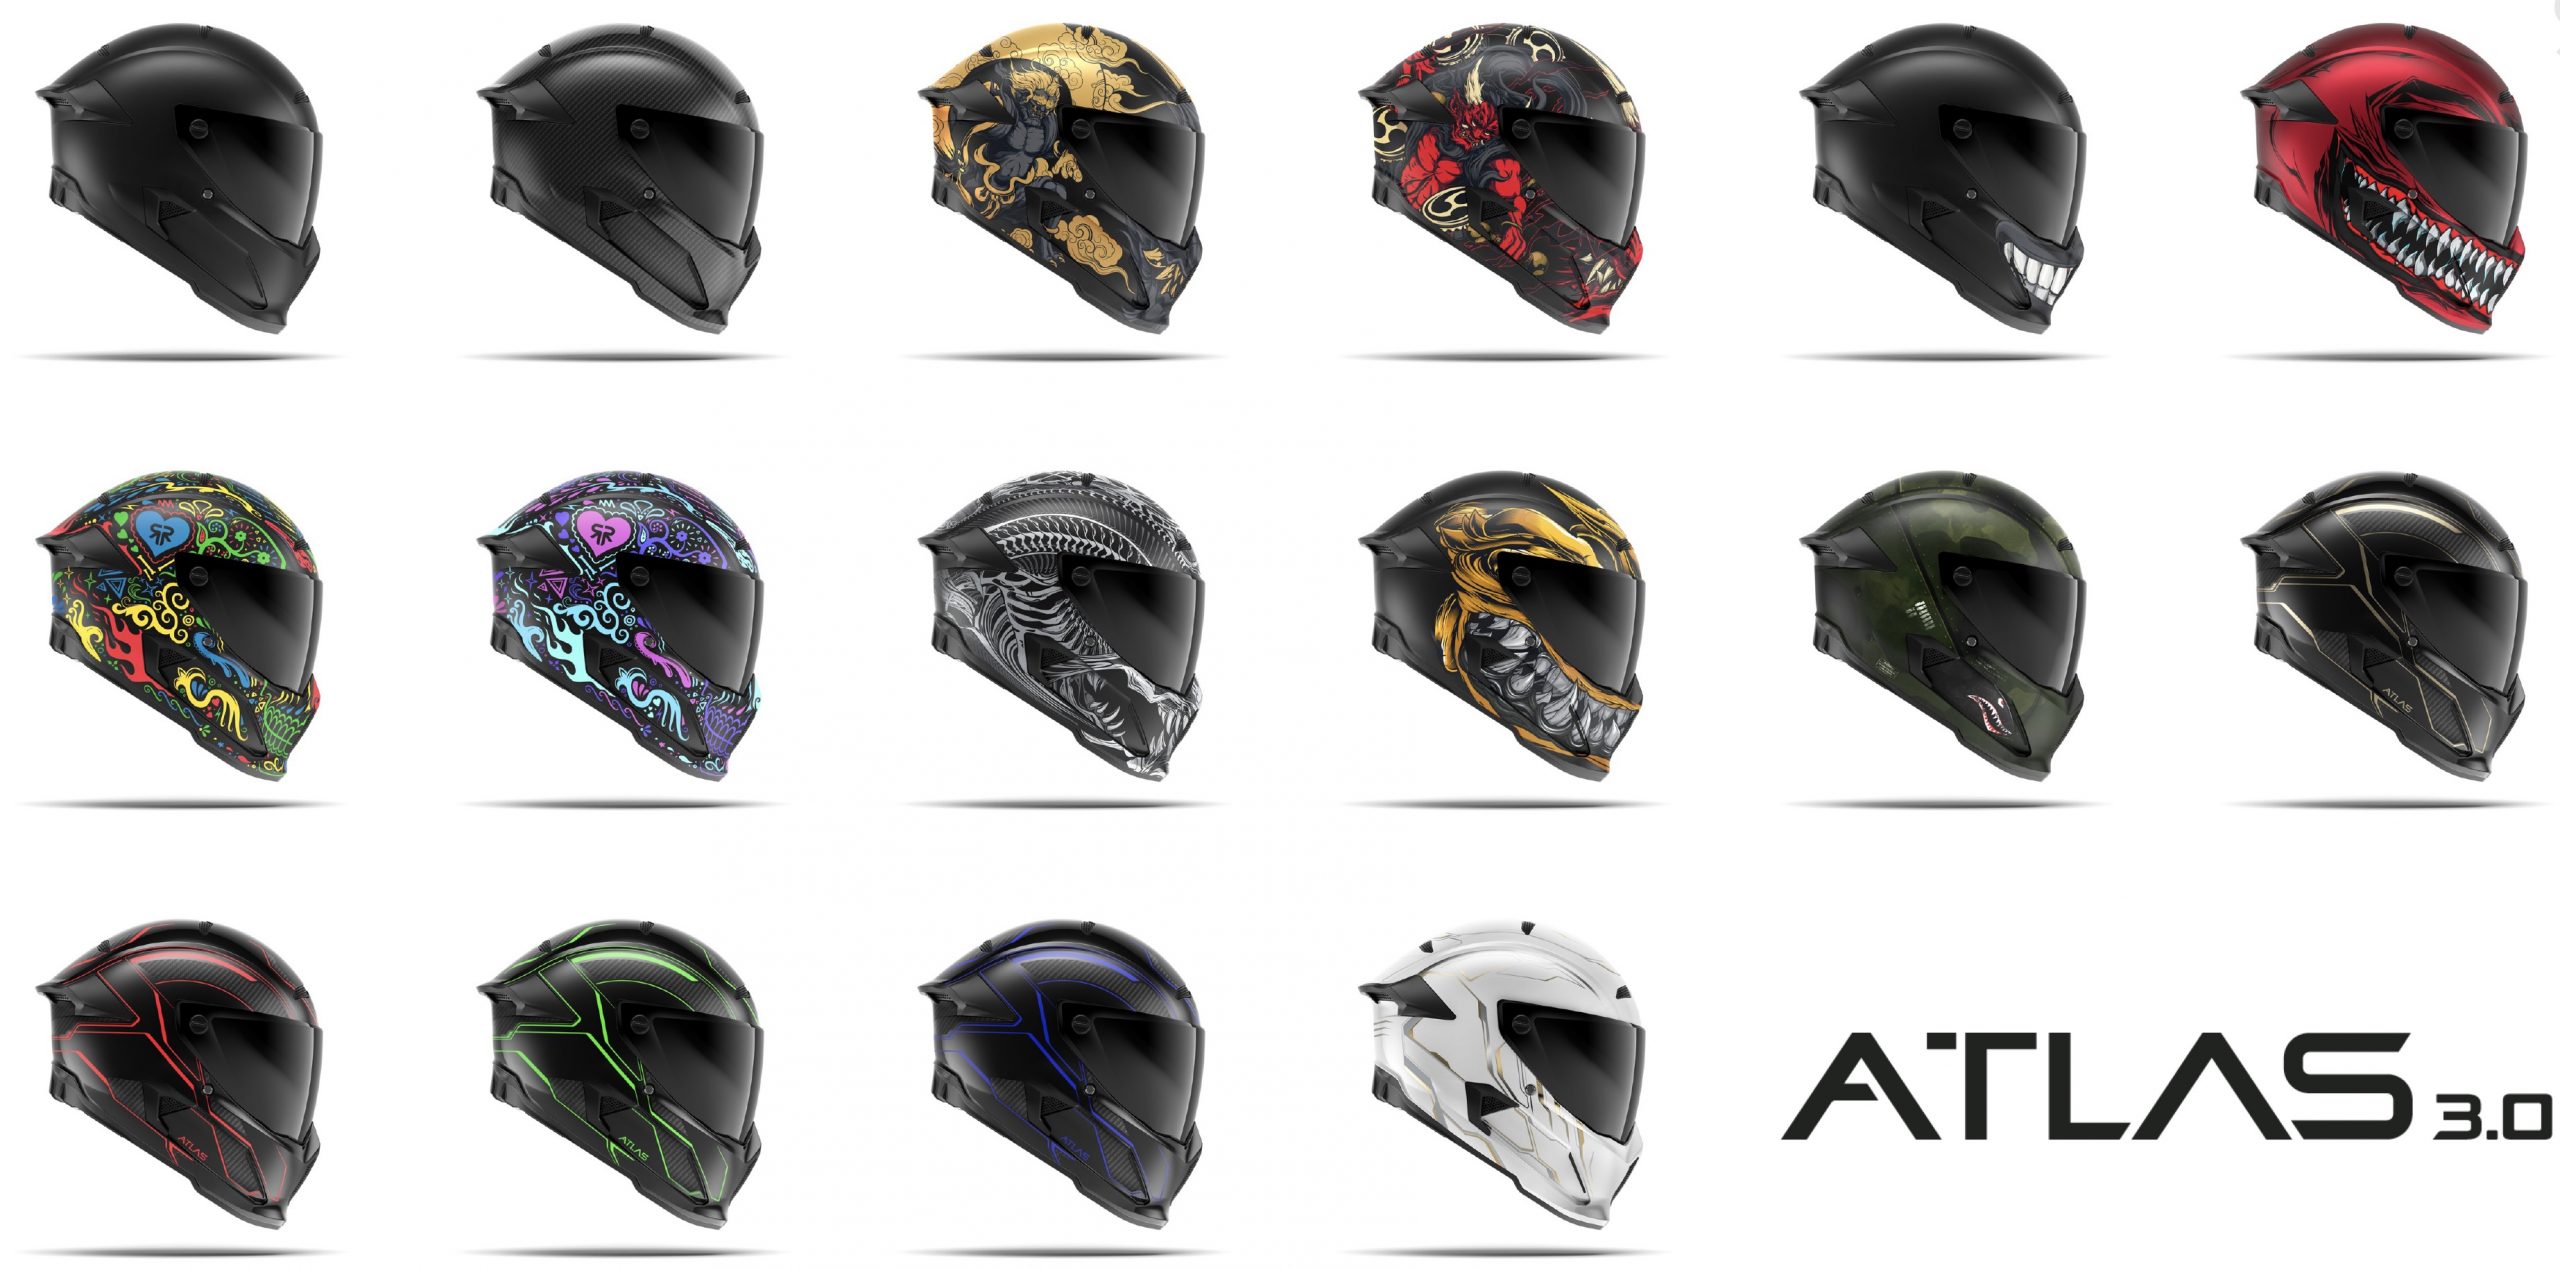 Ruroc Atlas 3.0 helmet